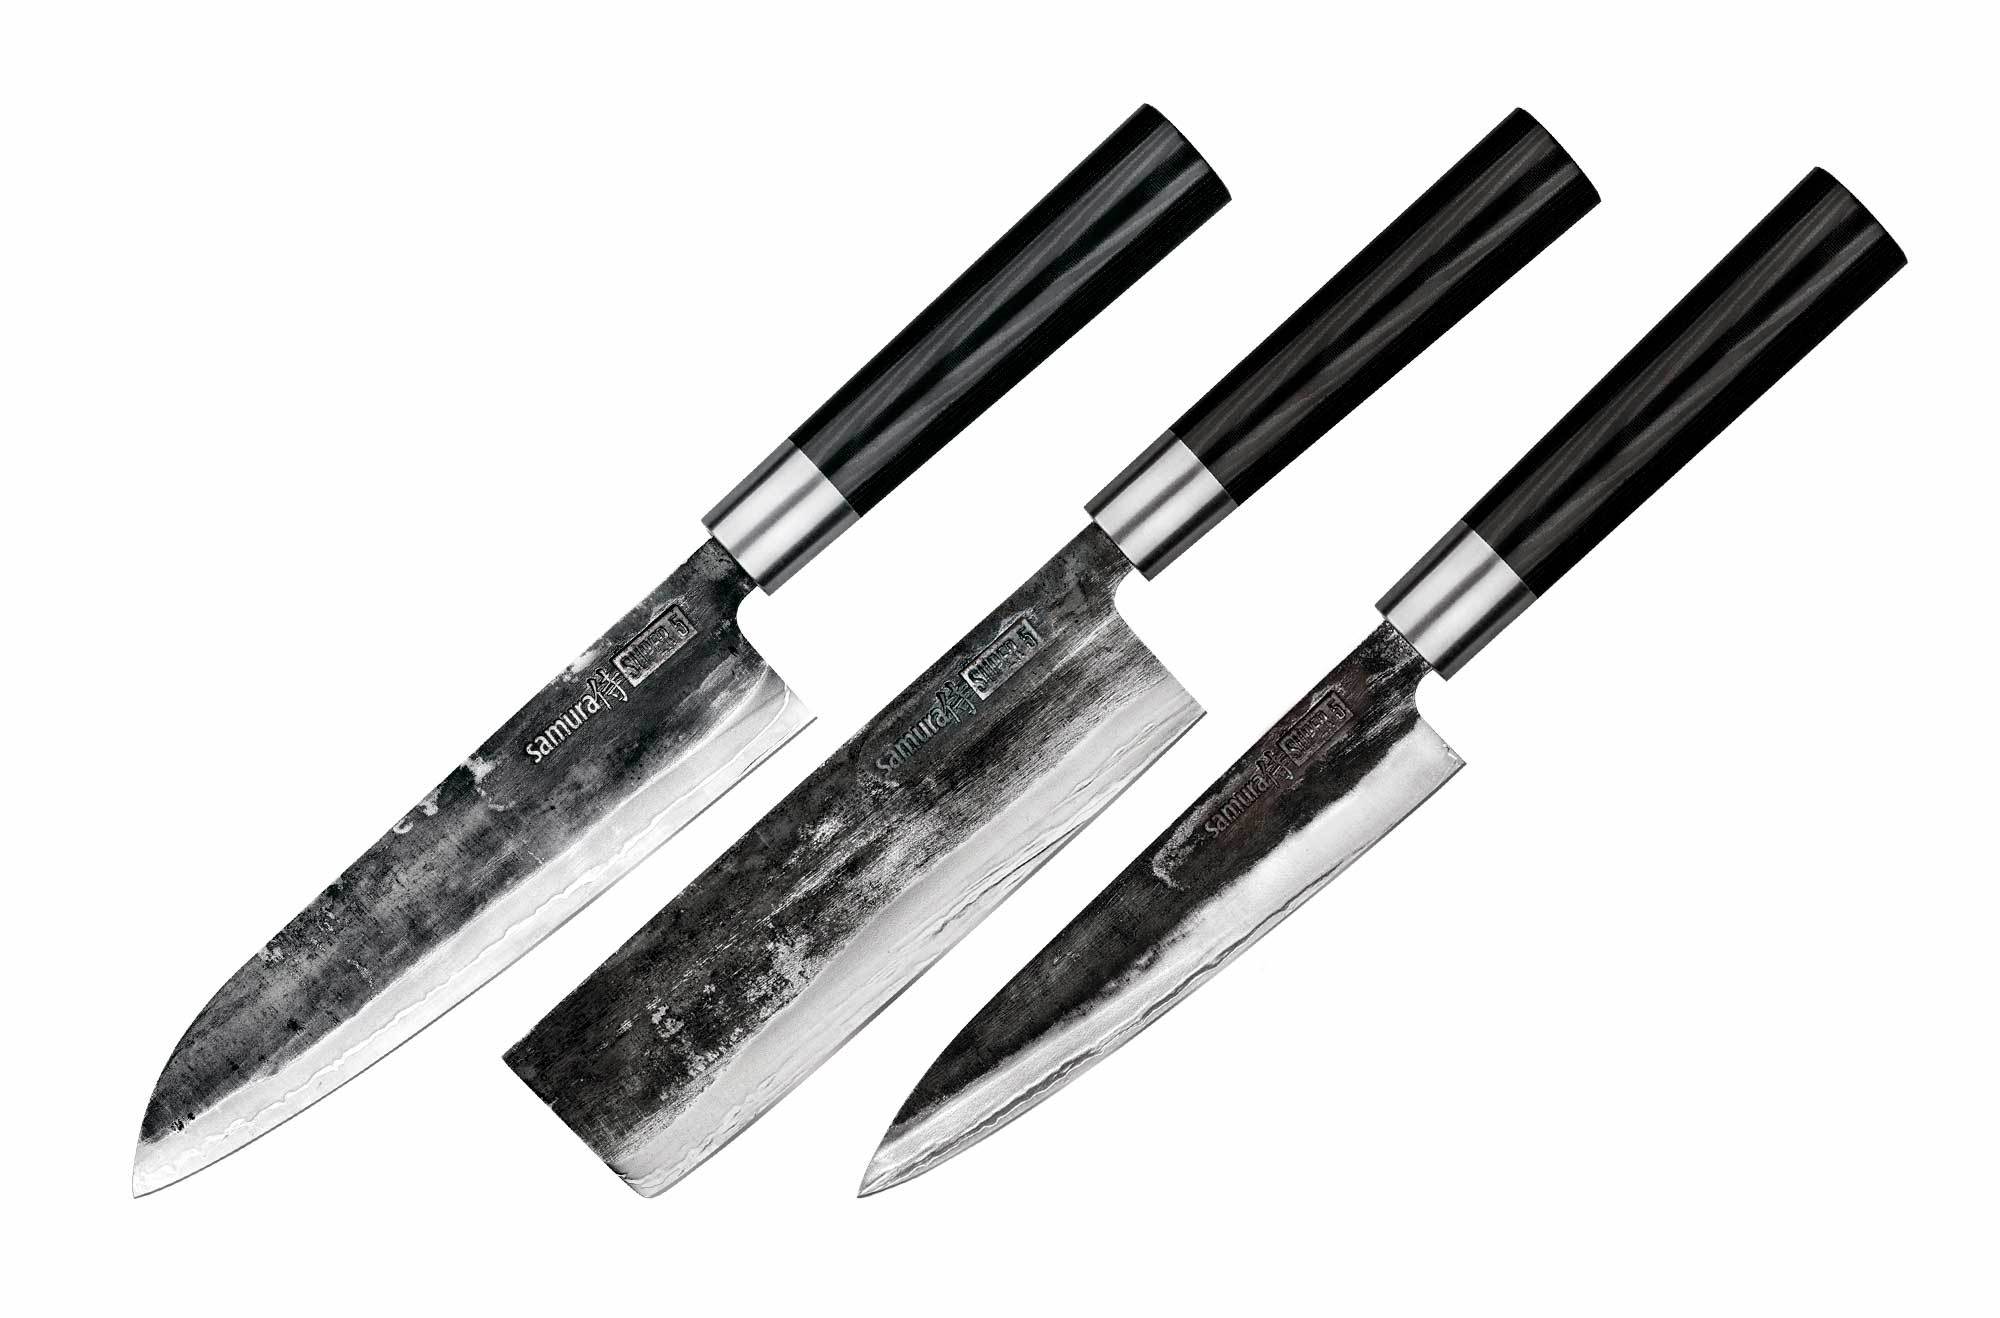 Подарочный набор из 3-х кухонных ножей Samura Super 5, сталь VG-10 в обкладках из дамасской стали, рукоять микарта набор туриста в чехле 5в1 мастер к рукоять синяя металл